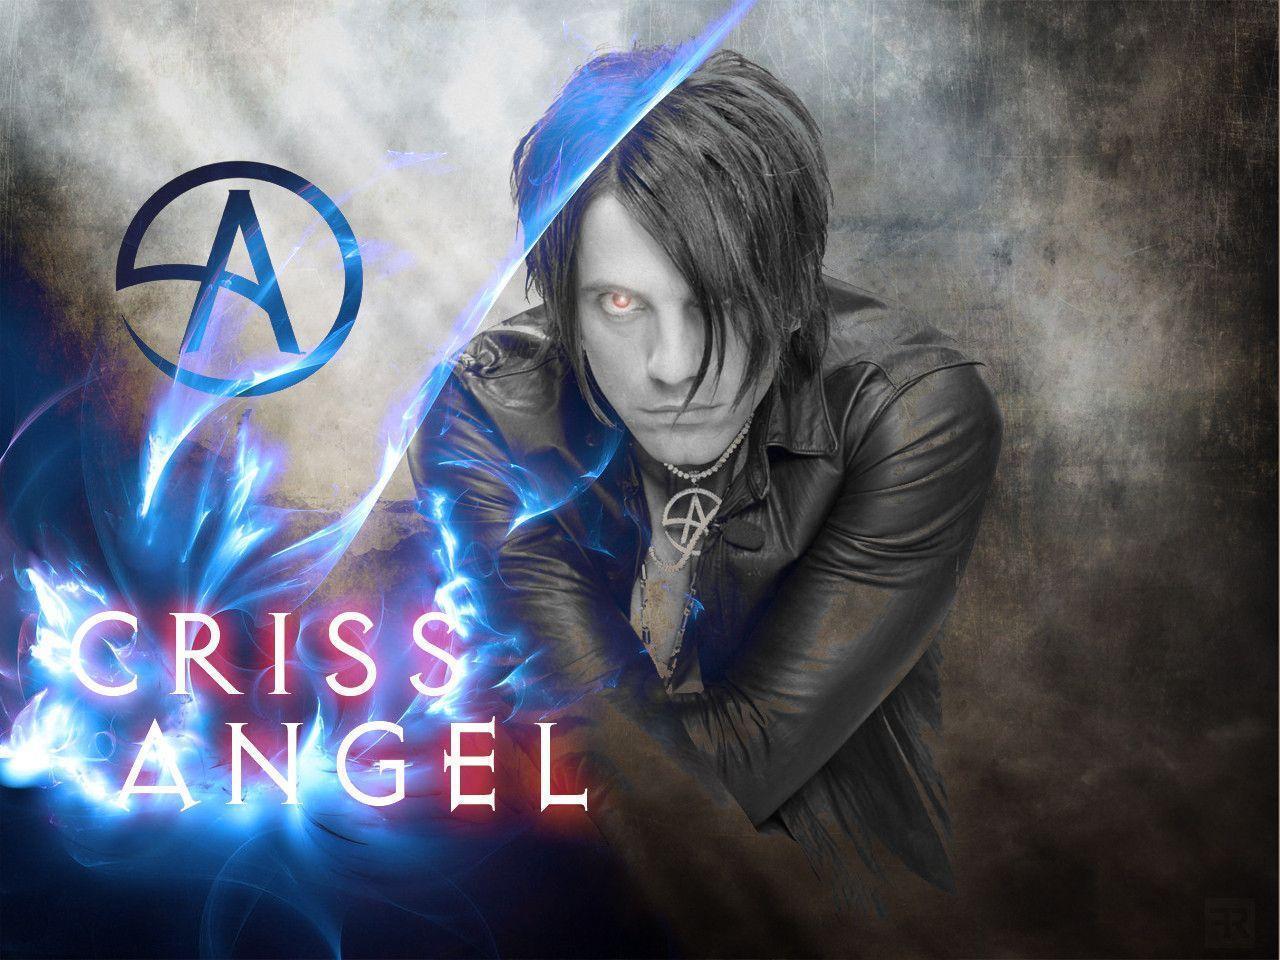 Criss Angel fan poster by FilipR8